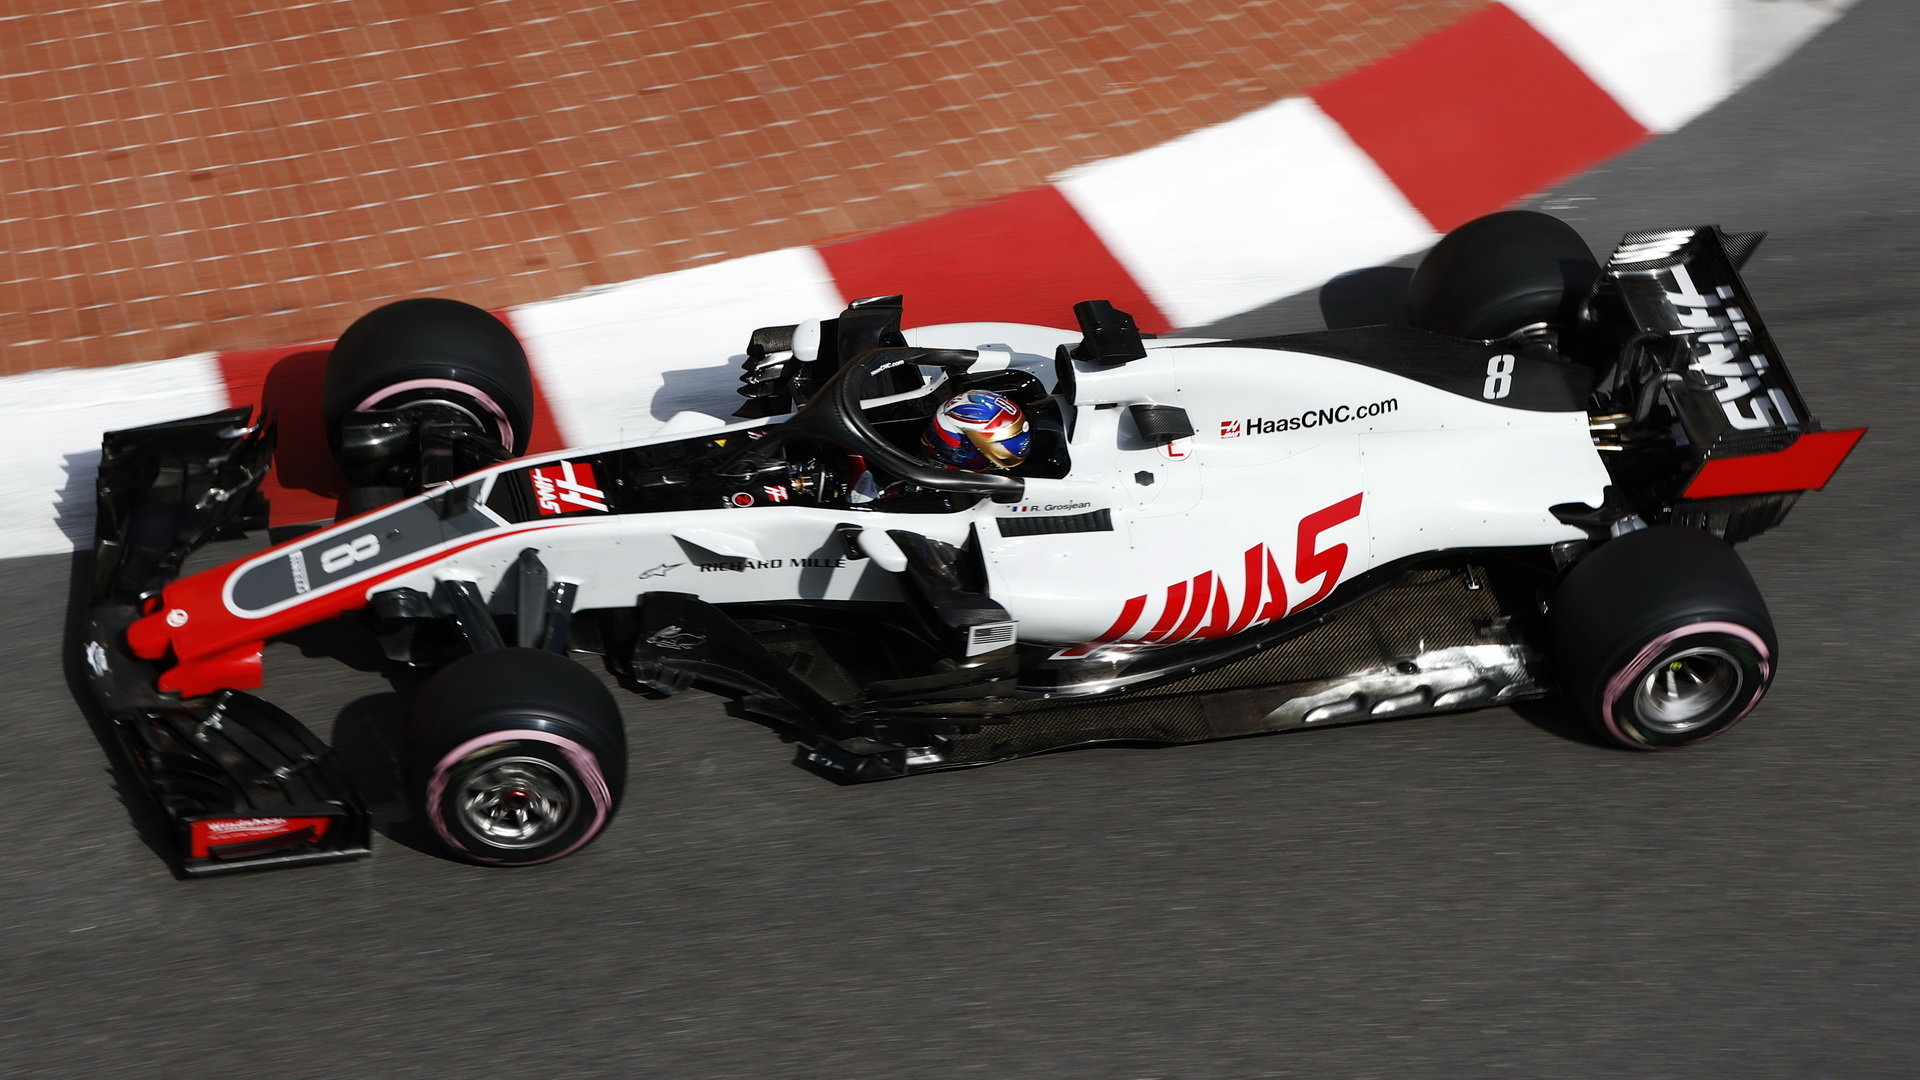 Romainovi Grosjeanovi sezóna vůbec nevychází dle představ, s konkurenceschopným vozem na body zatím ani jednou nedosáhl